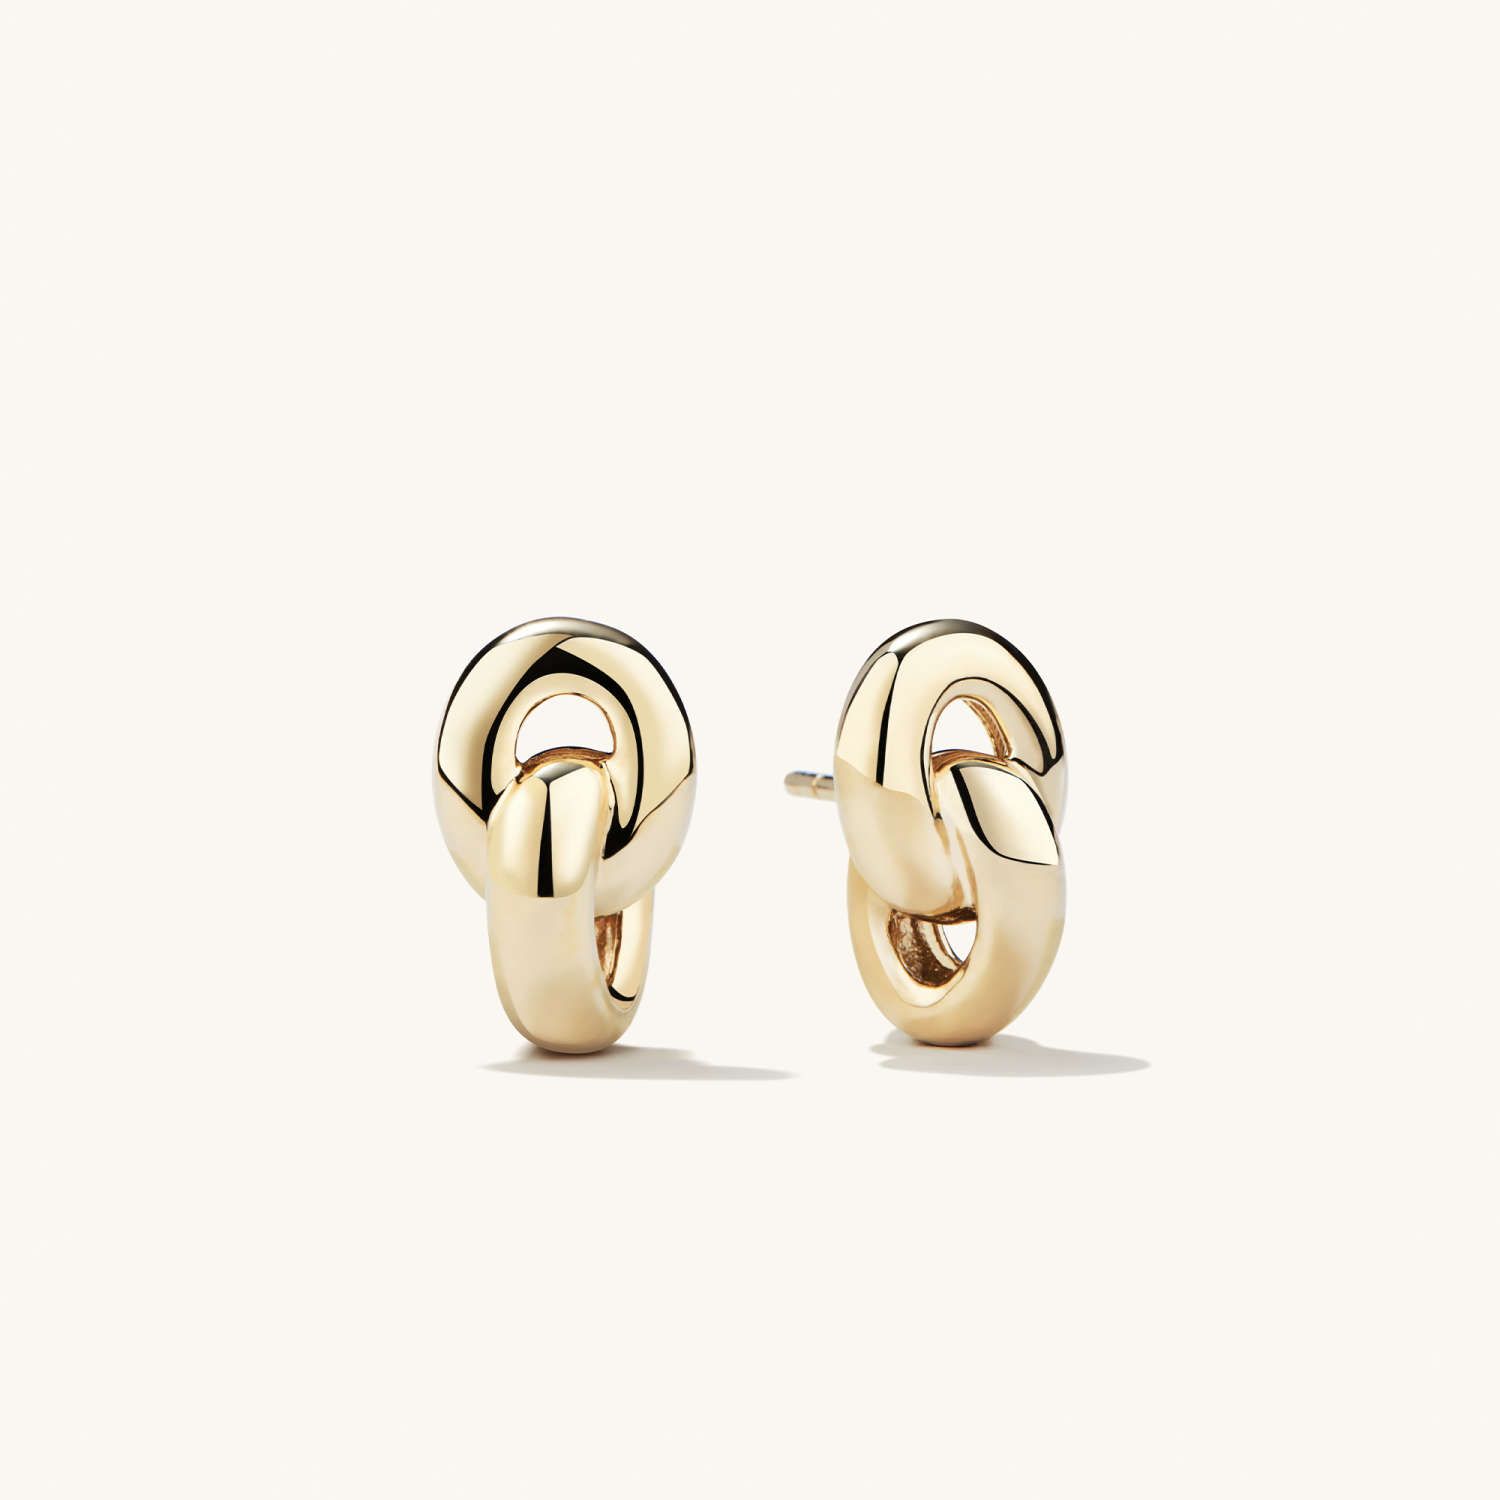 Vermeil Linked Stud Earrings : Handcrafted in 14K Gold | Mejuri | Mejuri (Global)